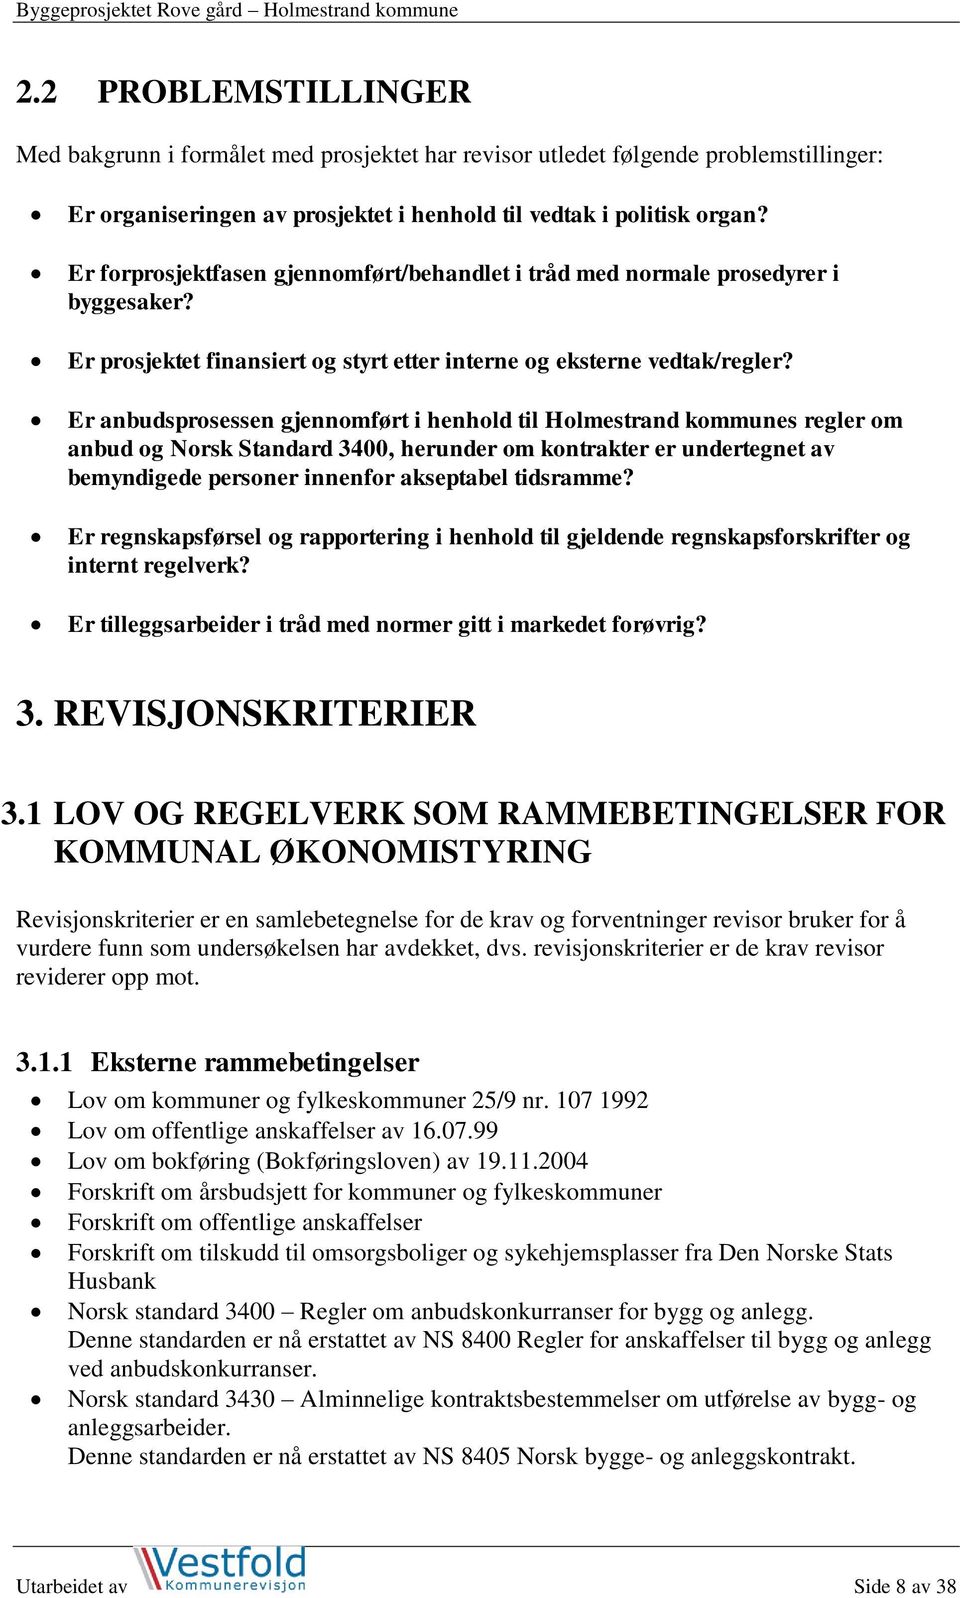 Er anbudsprosessen gjennomført i henhold til Holmestrand kommunes regler om anbud og Norsk Standard 3400, herunder om kontrakter er undertegnet av bemyndigede personer innenfor akseptabel tidsramme?